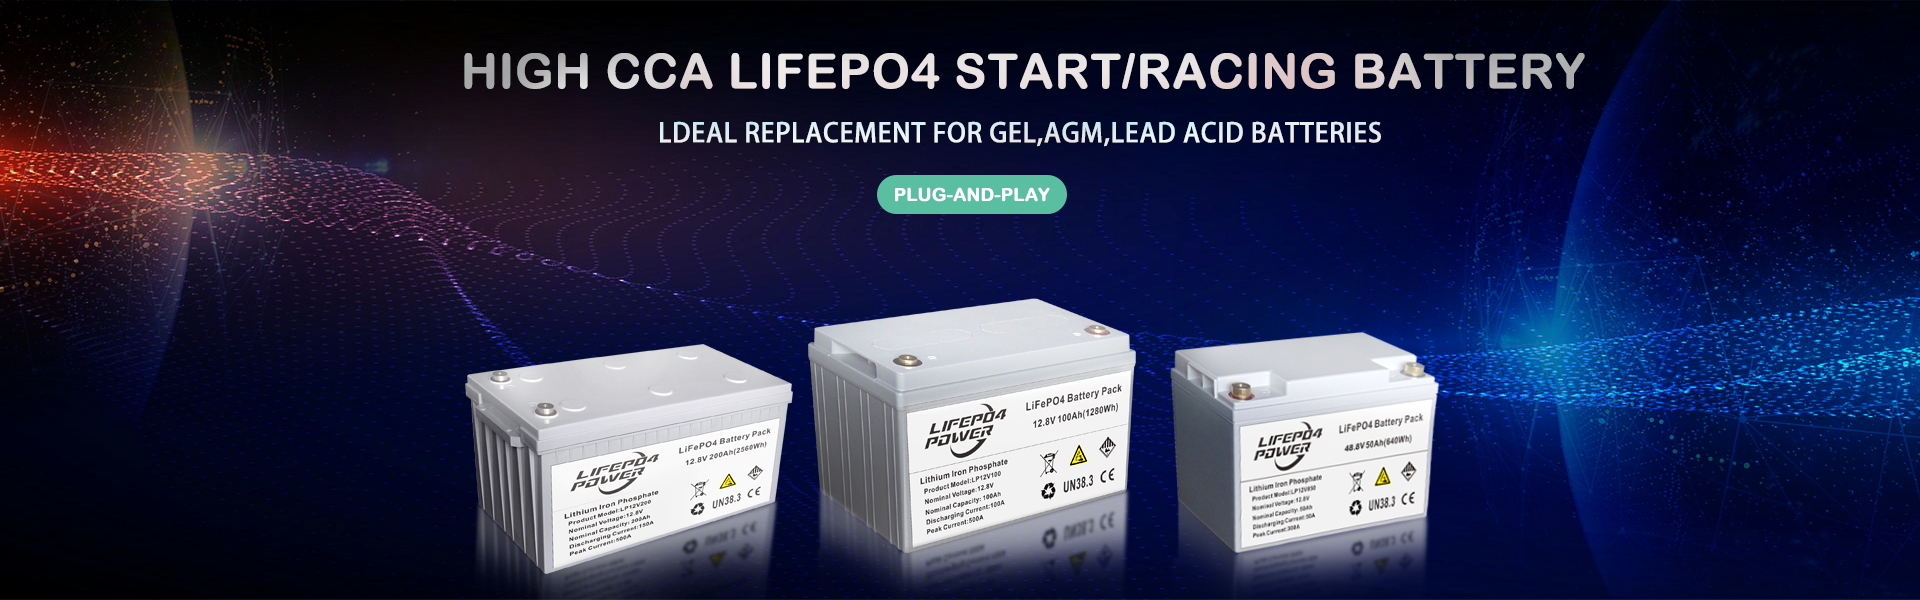 उच्च CCA LiFePO4 स्टार्ट / रेसिंग बैटरी प्लग-एंड-प्ले। GEL, AGM, लीड एसिड बैटरियों के लिए पर्याप्त प्रतिस्थापन